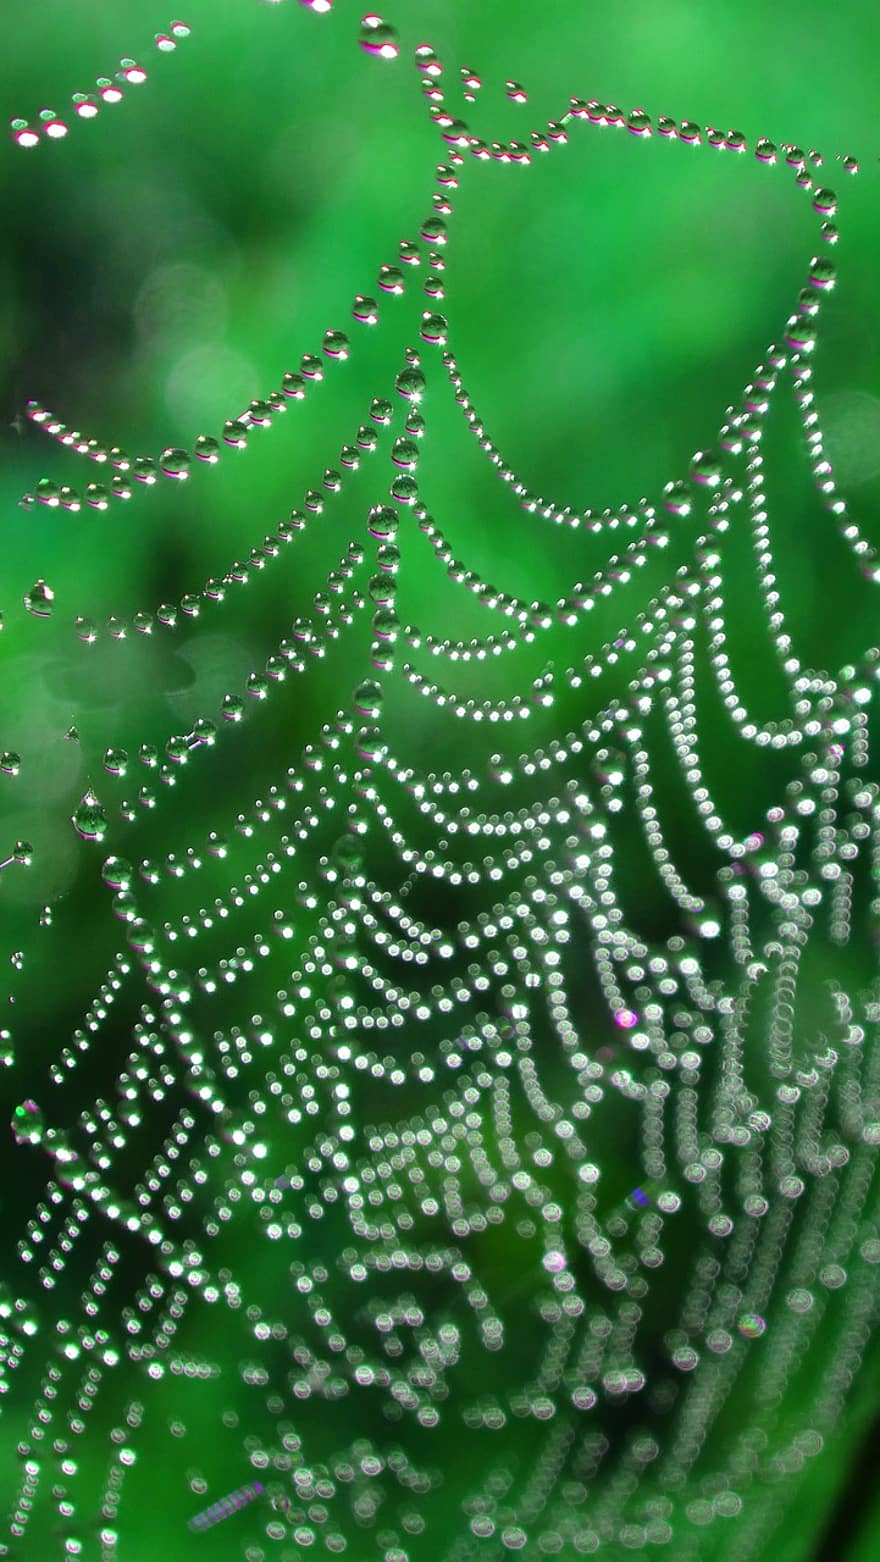 örümcek ağı, çiy, su damlaları, çiy damlası, su incileri, damla, ağ, örümcek, bahar, Bahçe, doğa